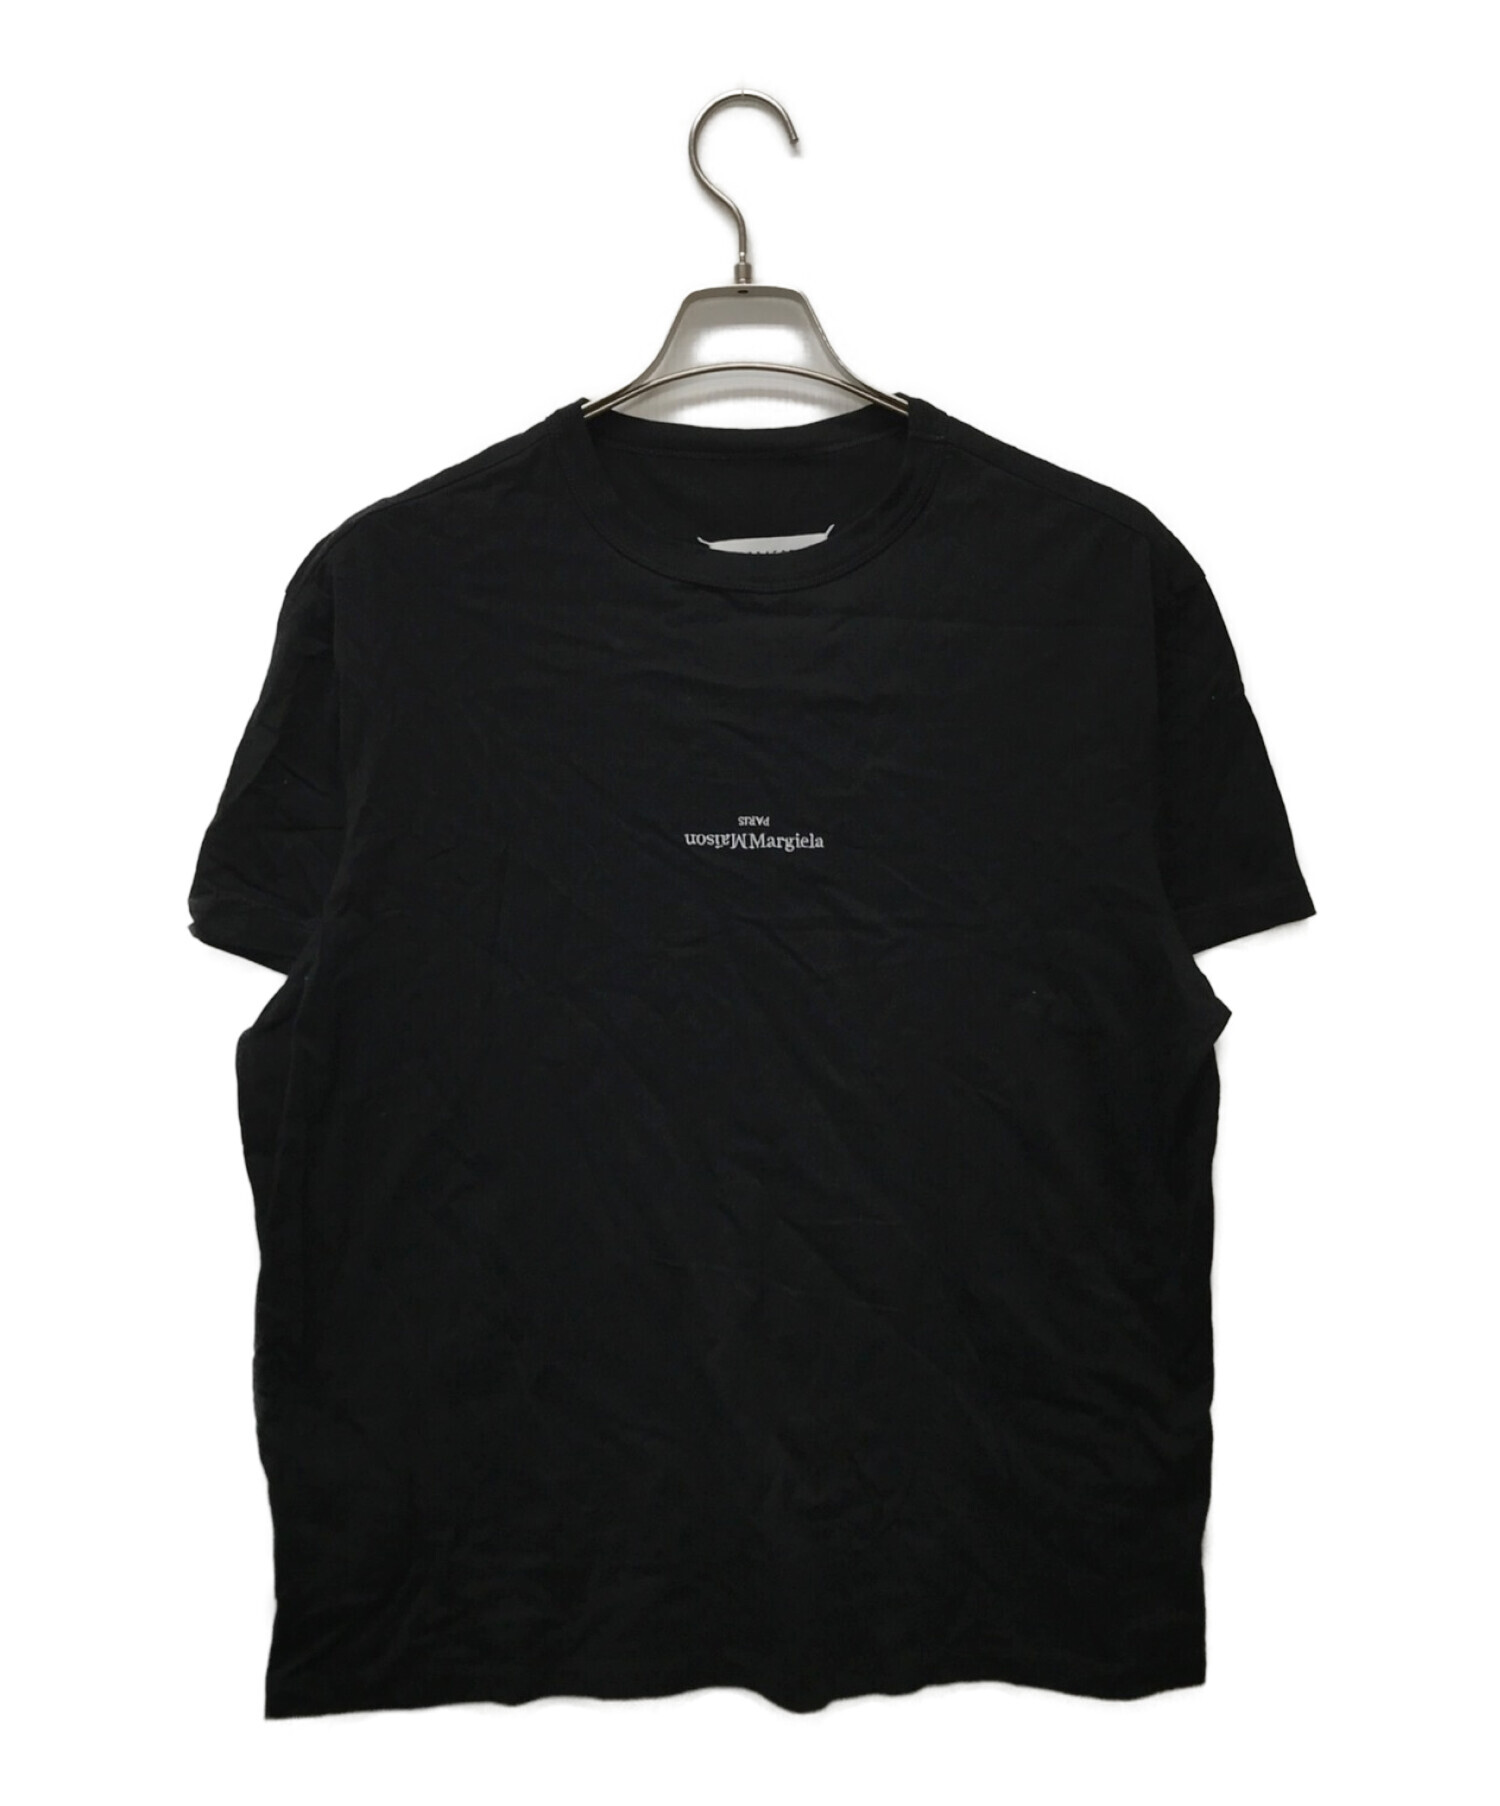 Maison Margiela 10 (メゾンマルジェラ 10) 反転ミニロゴTシャツ ブラック サイズ:50